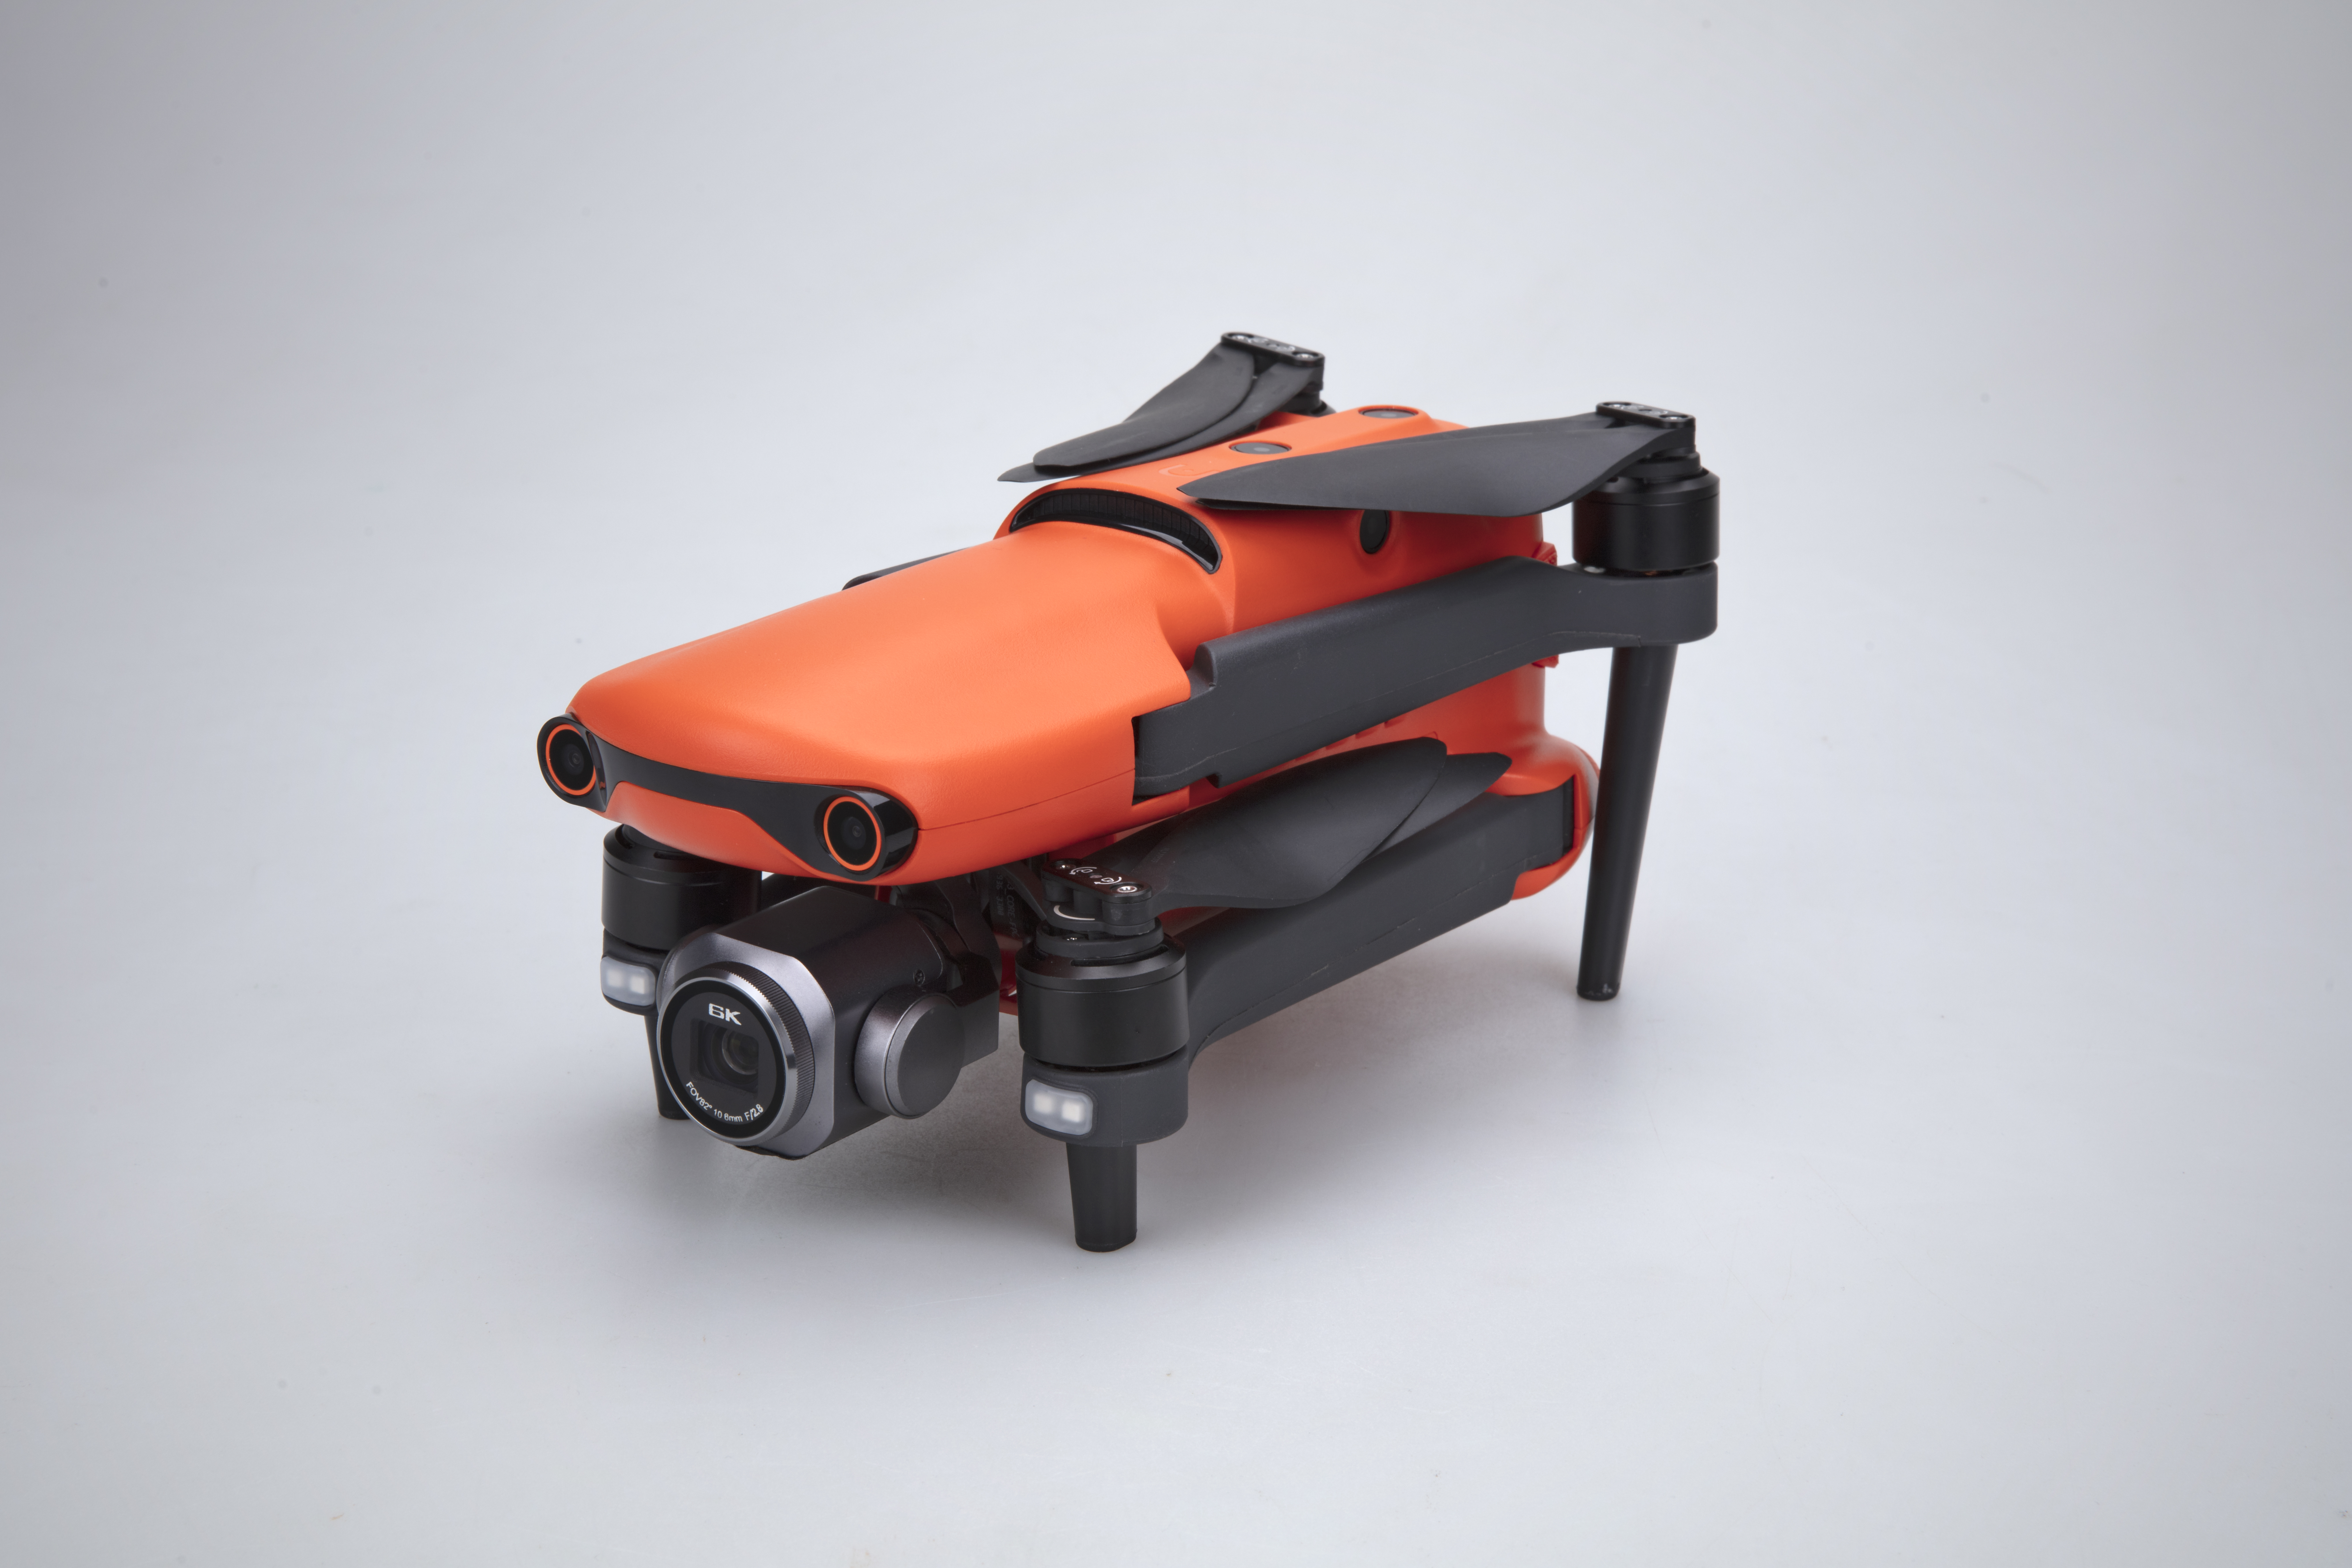 Autel EVO 2 Pro drone